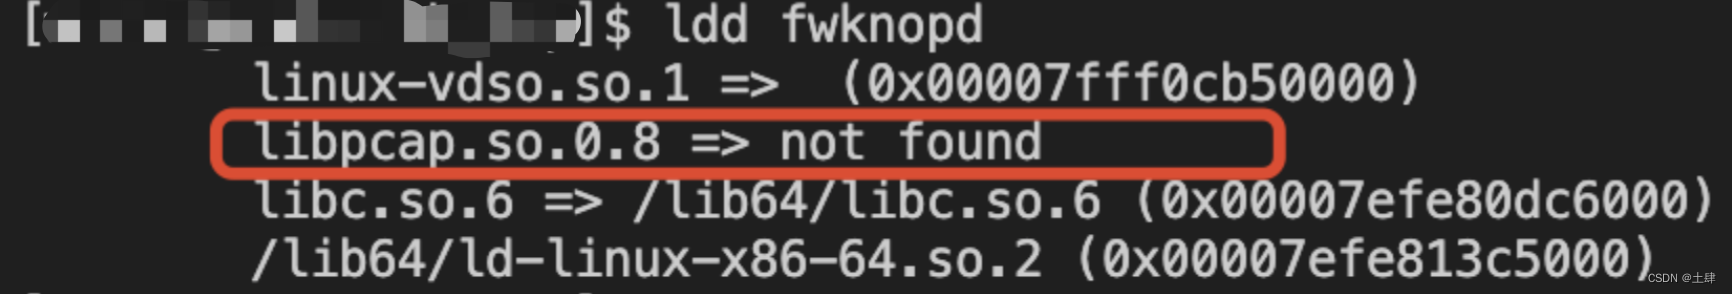 fwknop客户端服务端 - 交叉编译、静态编译